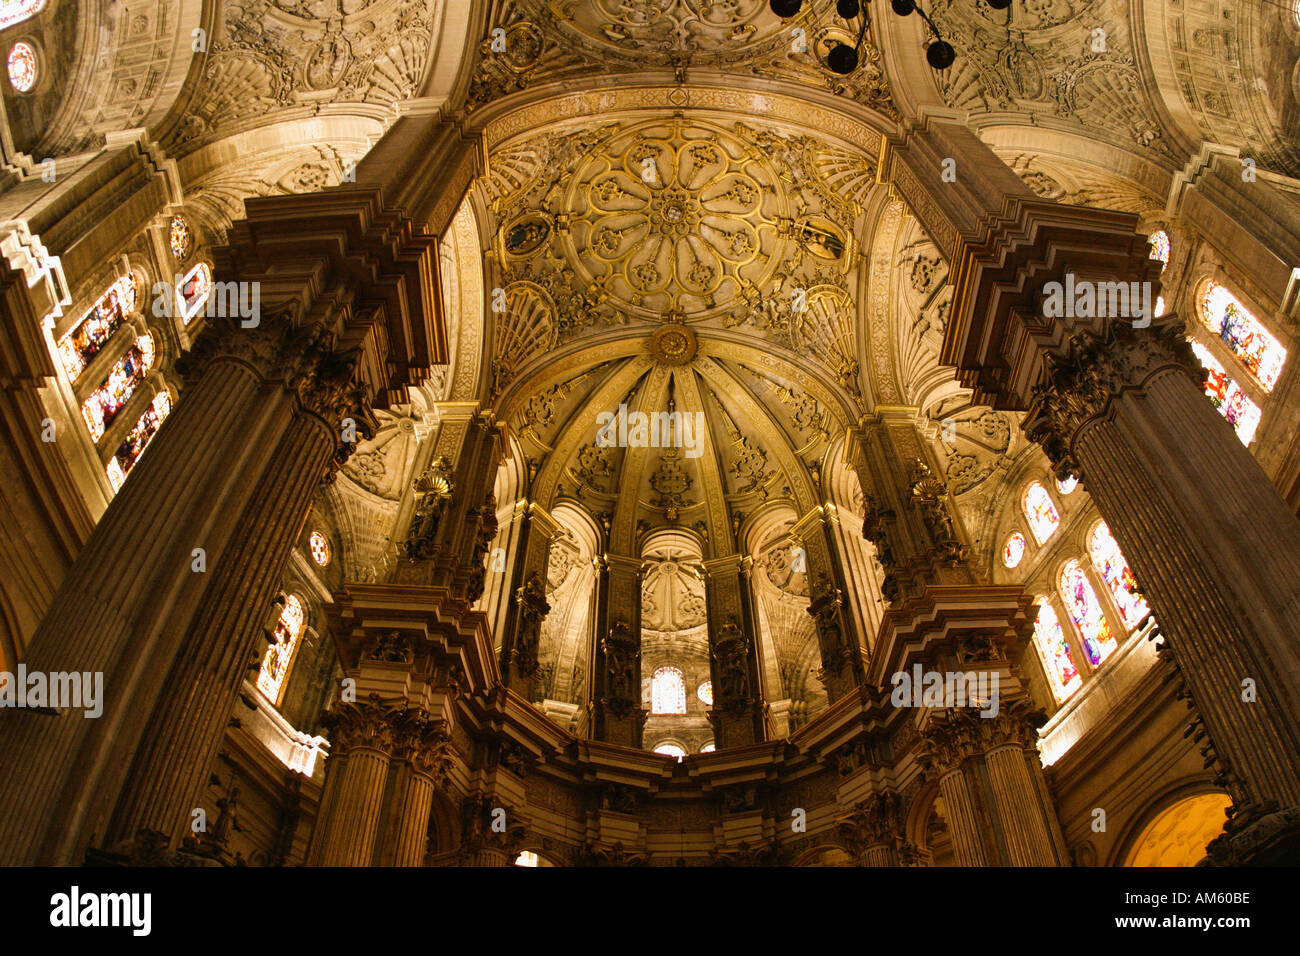 Malaga Costa del Sol Spain Interior cathedral Stock Photo